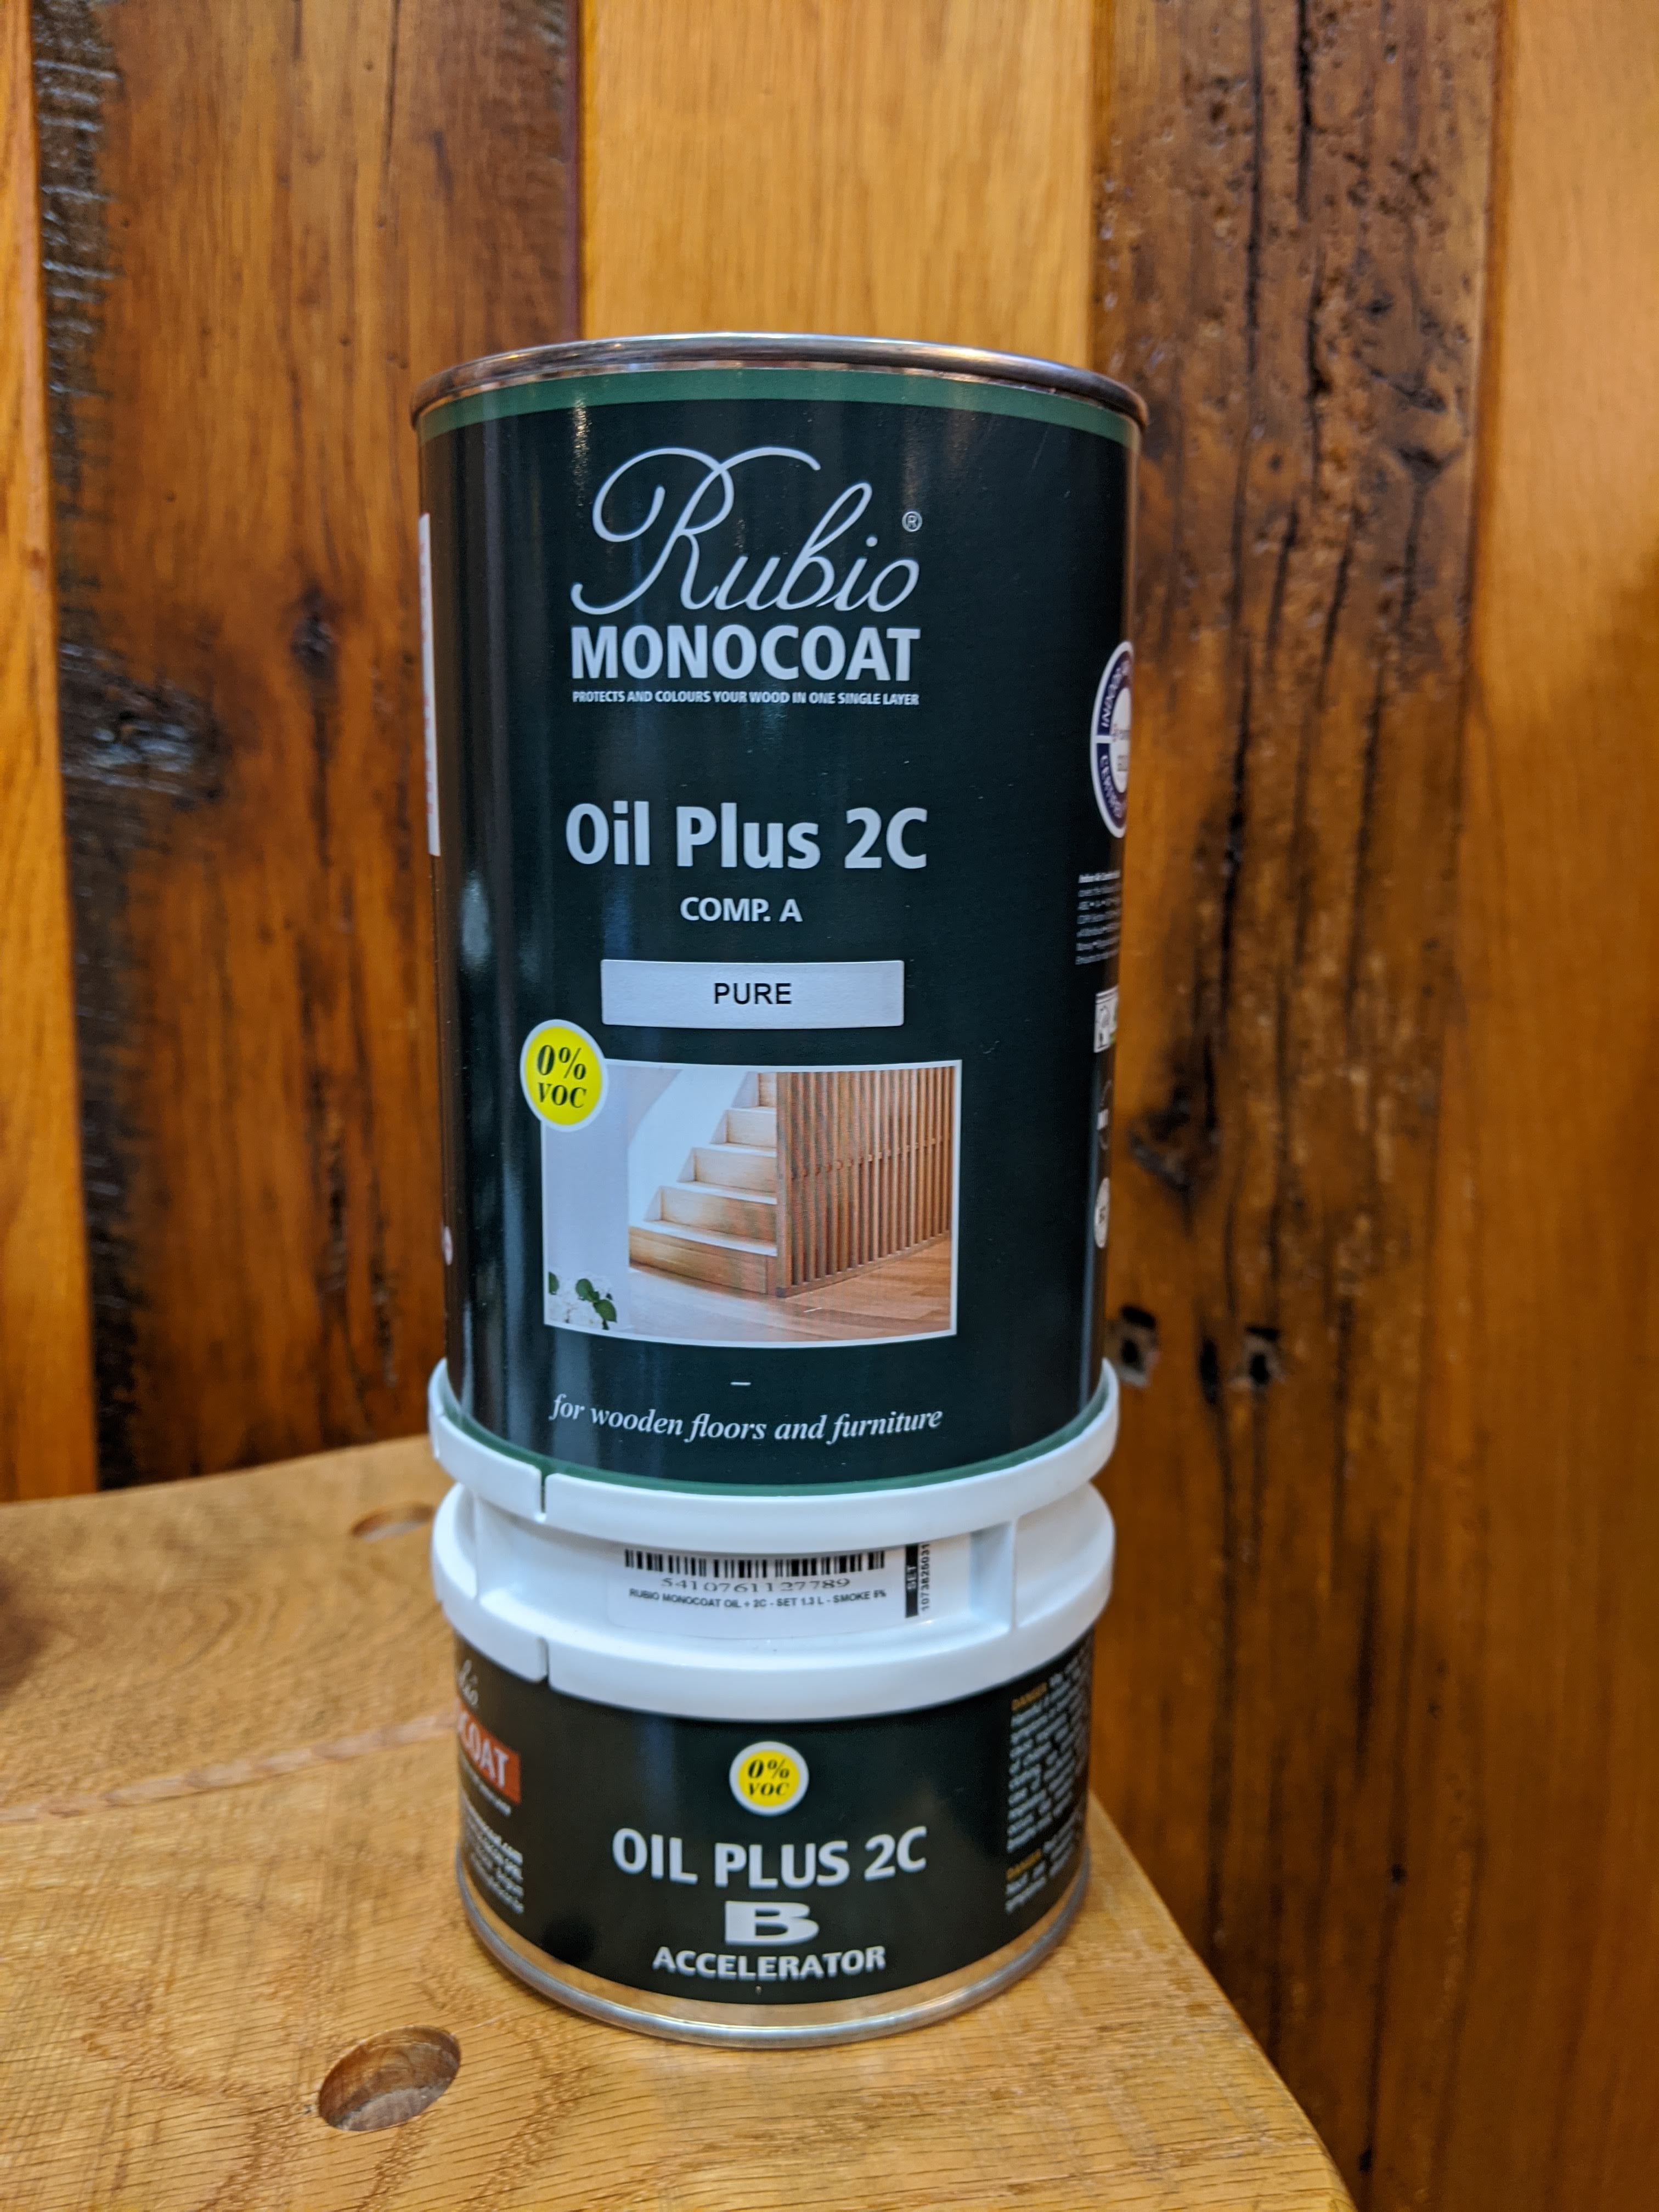 Rubio Monocoat Oil Plus 2C (Comp A) Pure - 20 ml